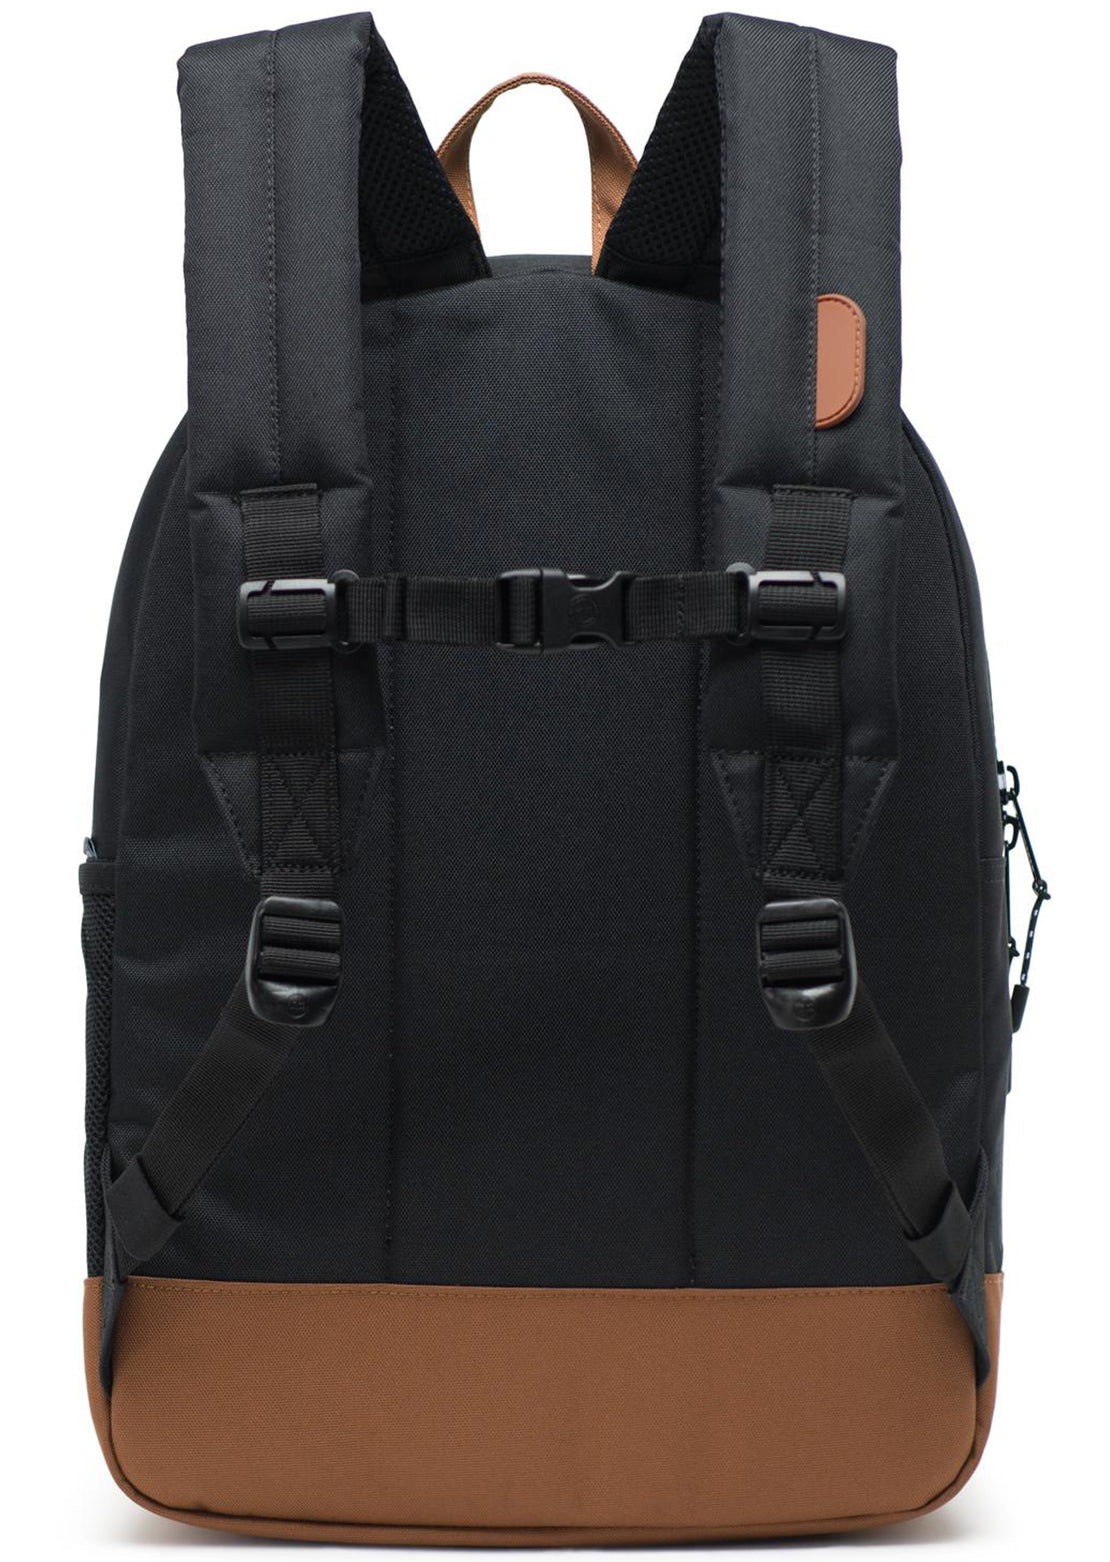 Herschel Junior Heritage XL Backpack Black/Saddle Brown